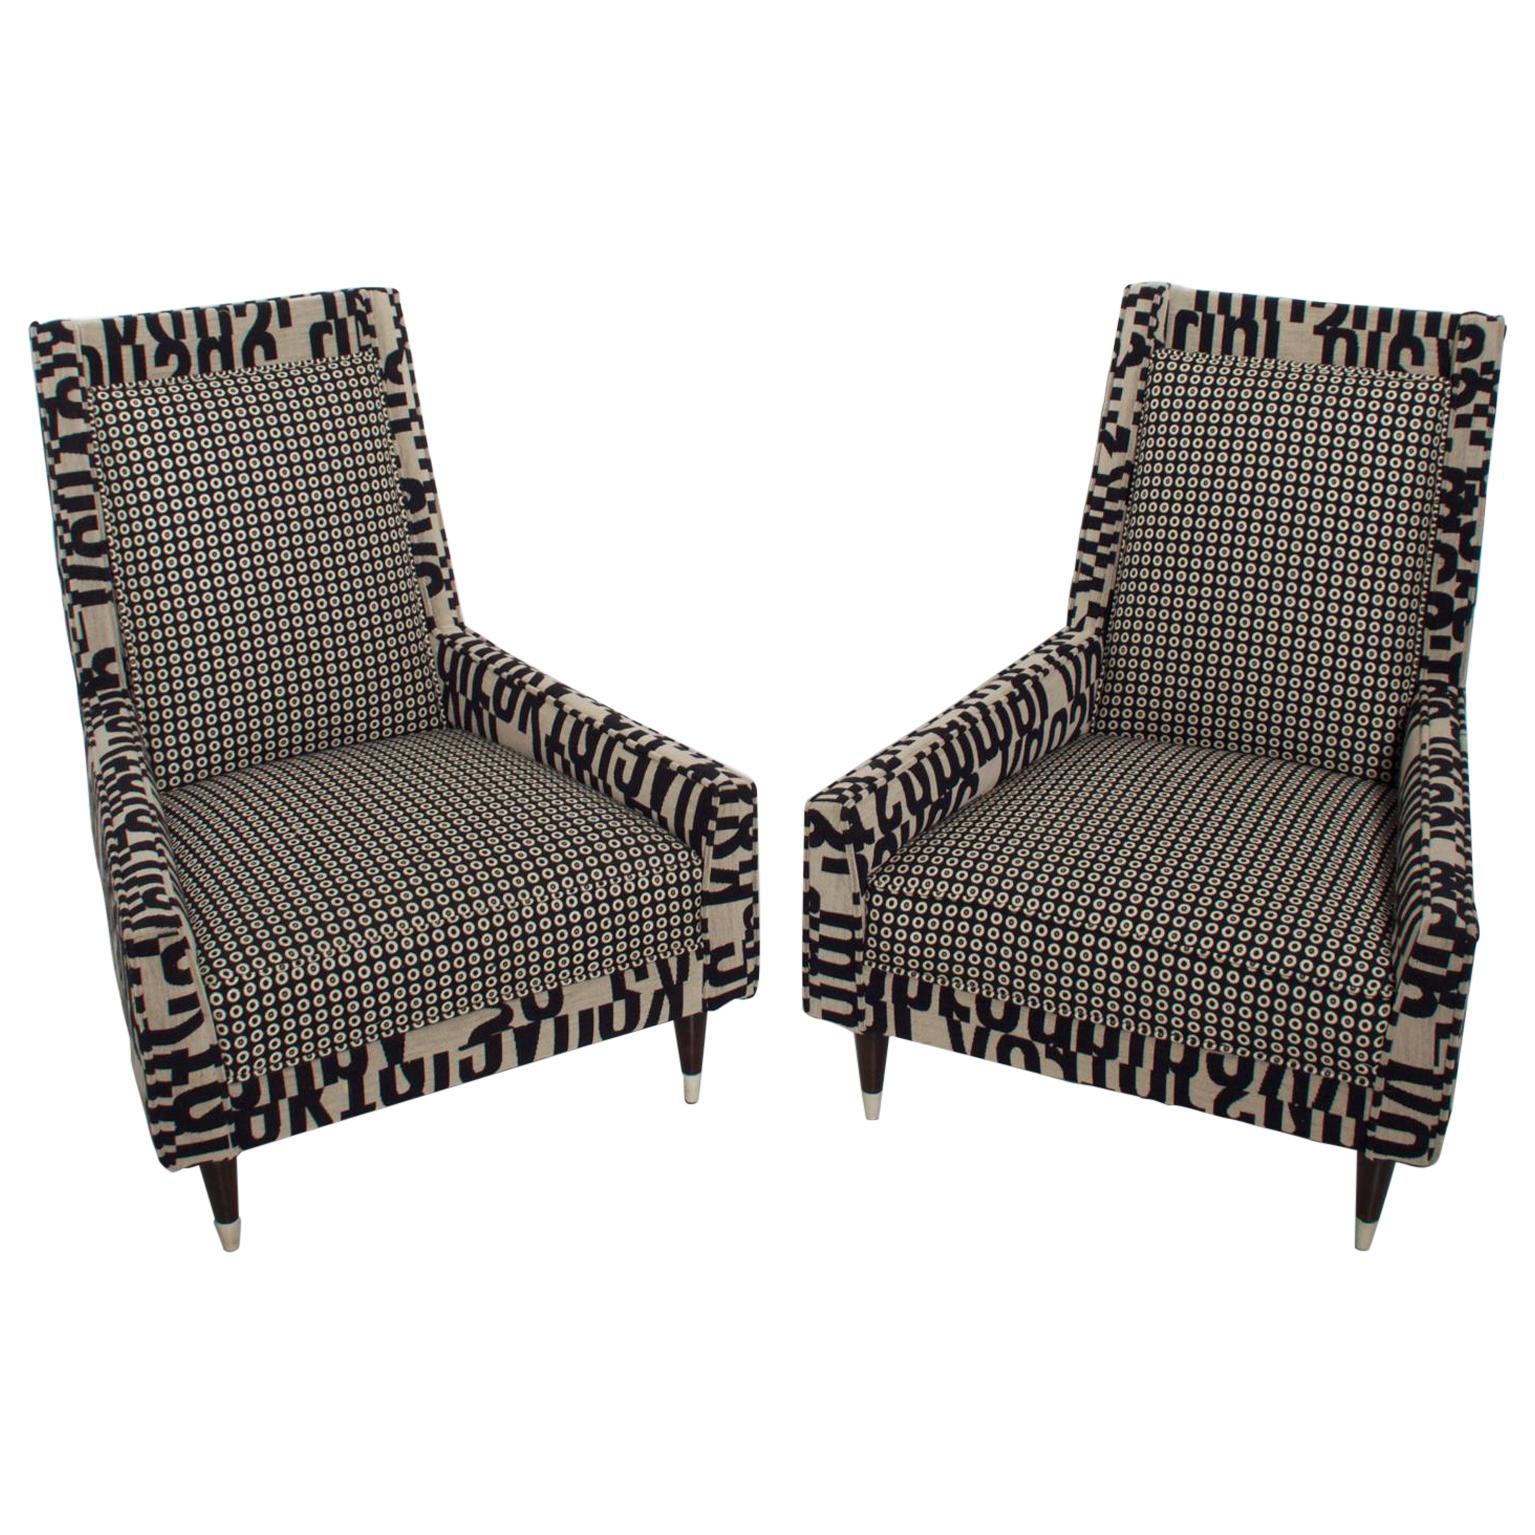 Gio Ponti Style by Arturo Pani Wild Wingback Lounge Chairs Midcentury Pair 1969